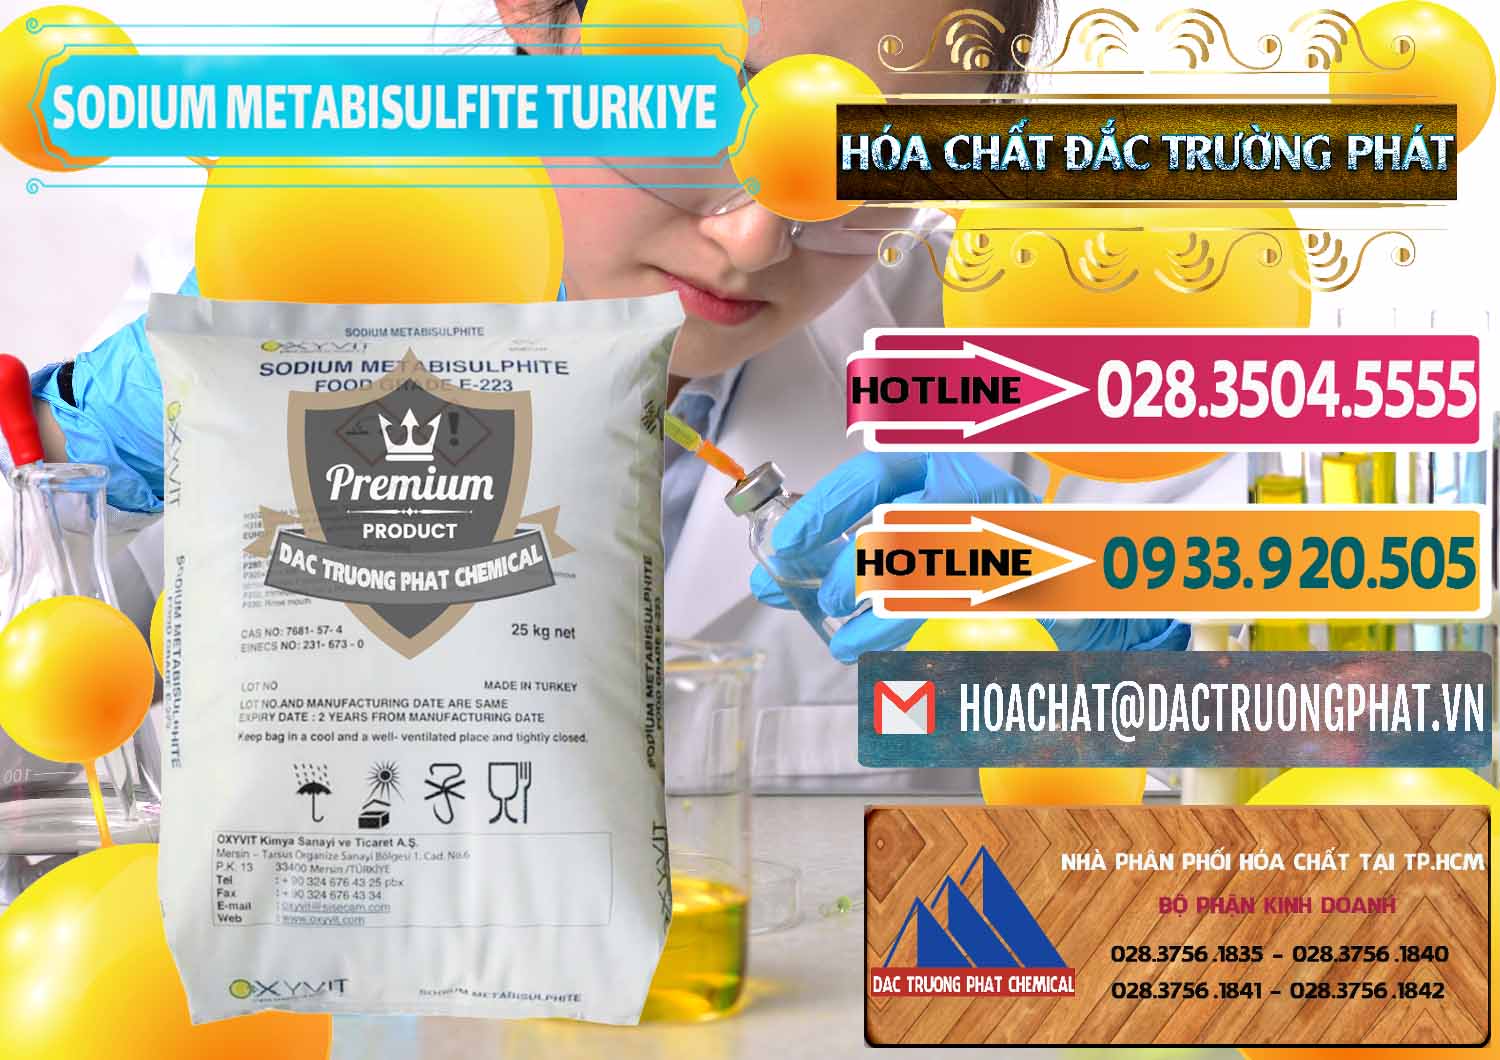 Đơn vị chuyên bán ( cung ứng ) Sodium Metabisulfite - NA2S2O5 Food Grade E-223 Thổ Nhĩ Kỳ Turkey - 0413 - Cty chuyên kinh doanh & cung cấp hóa chất tại TP.HCM - dactruongphat.vn